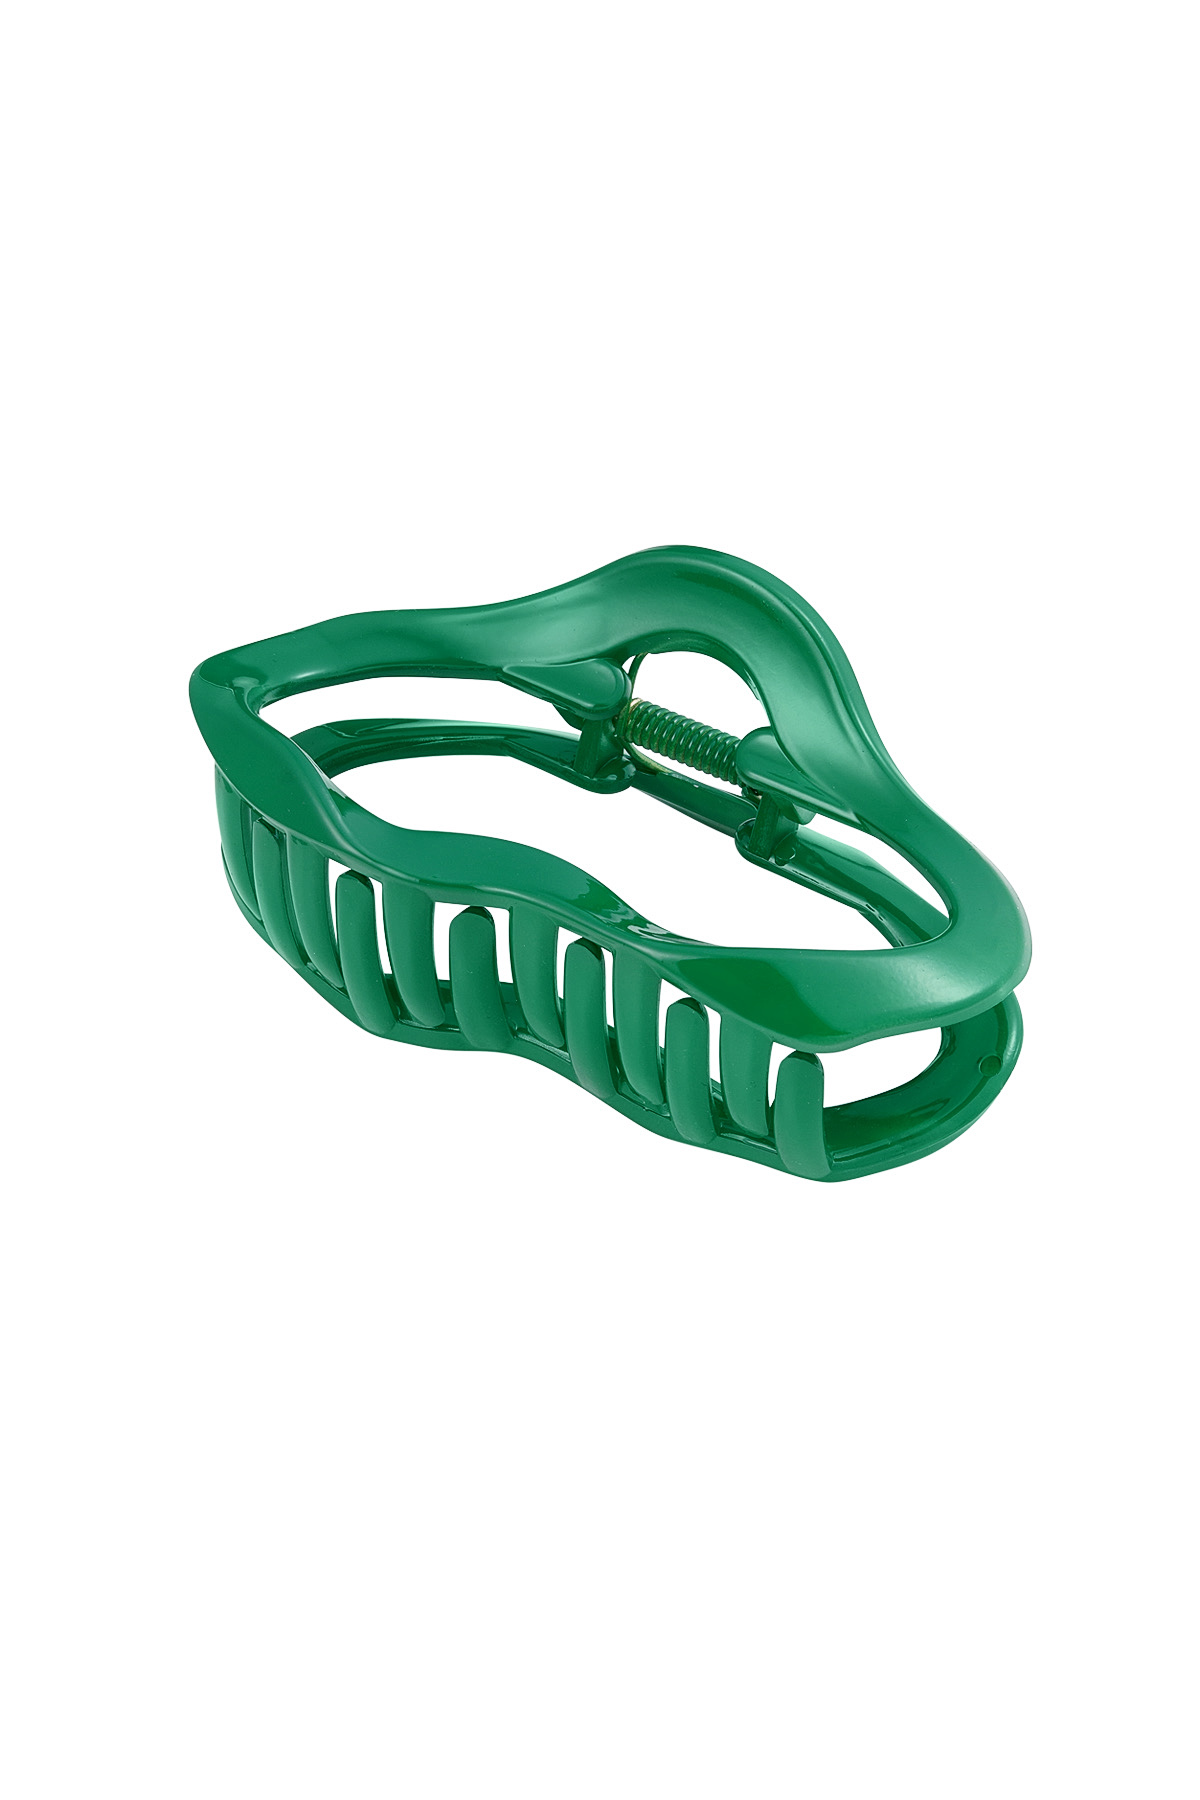 Hair clip aesthetic - green 